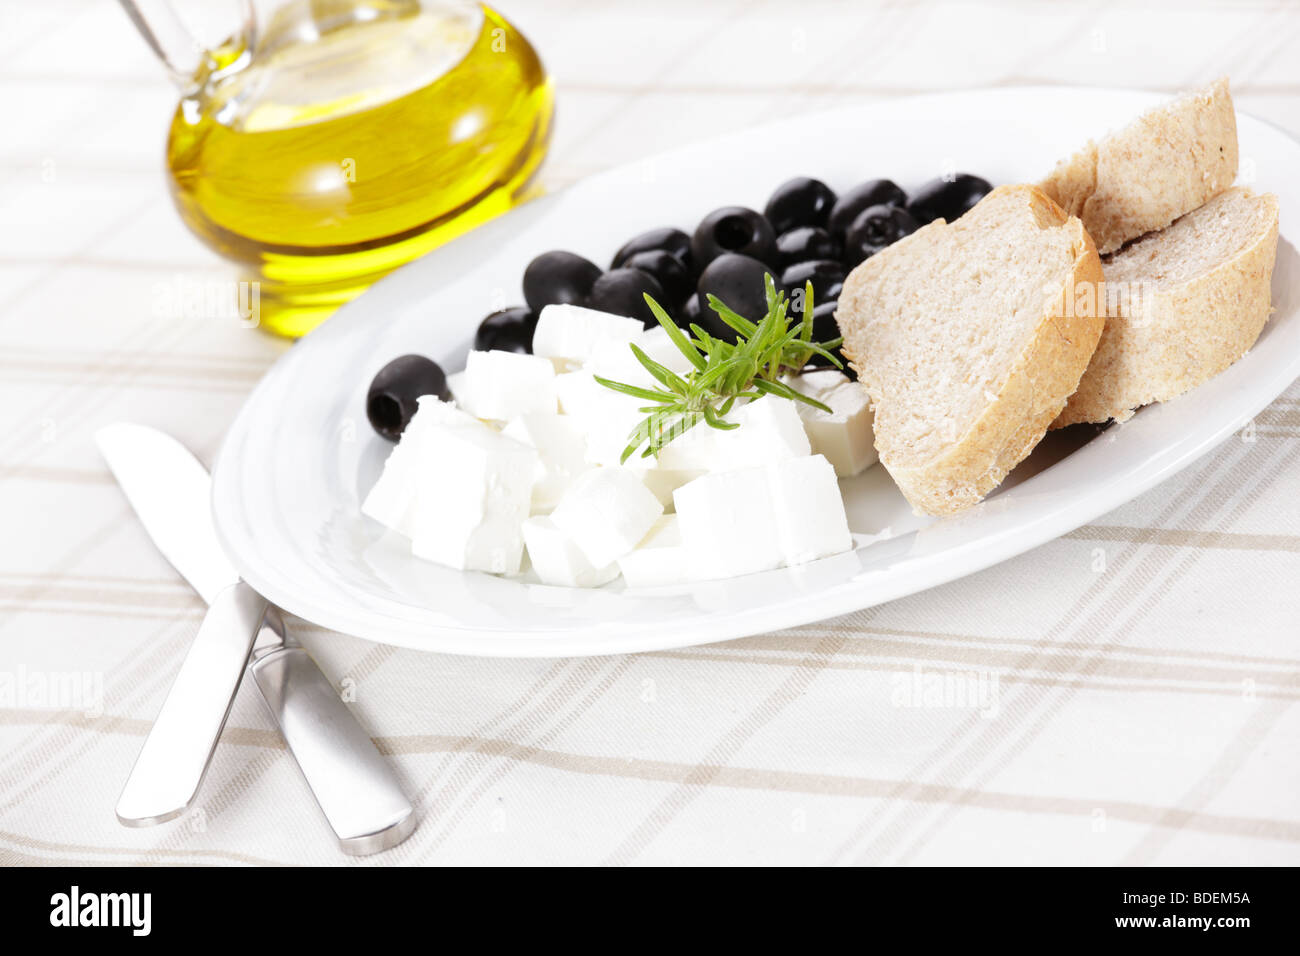 Le fromage Feta aux olives et du pain Banque D'Images